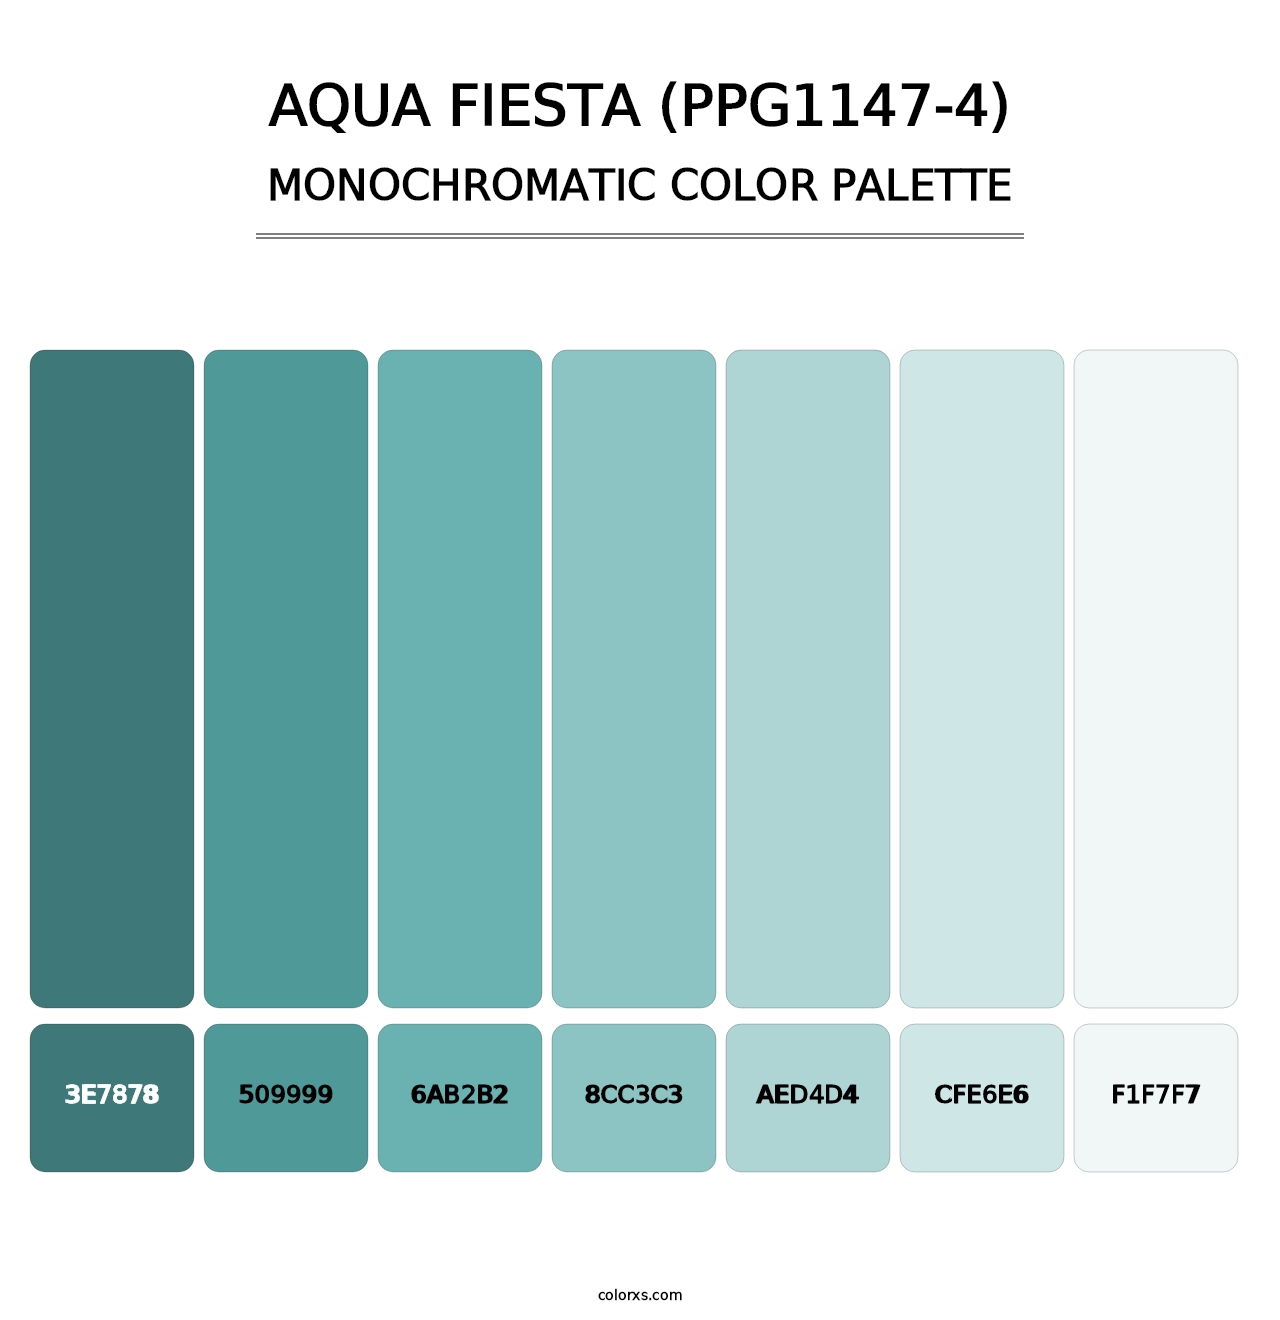 Aqua Fiesta (PPG1147-4) - Monochromatic Color Palette